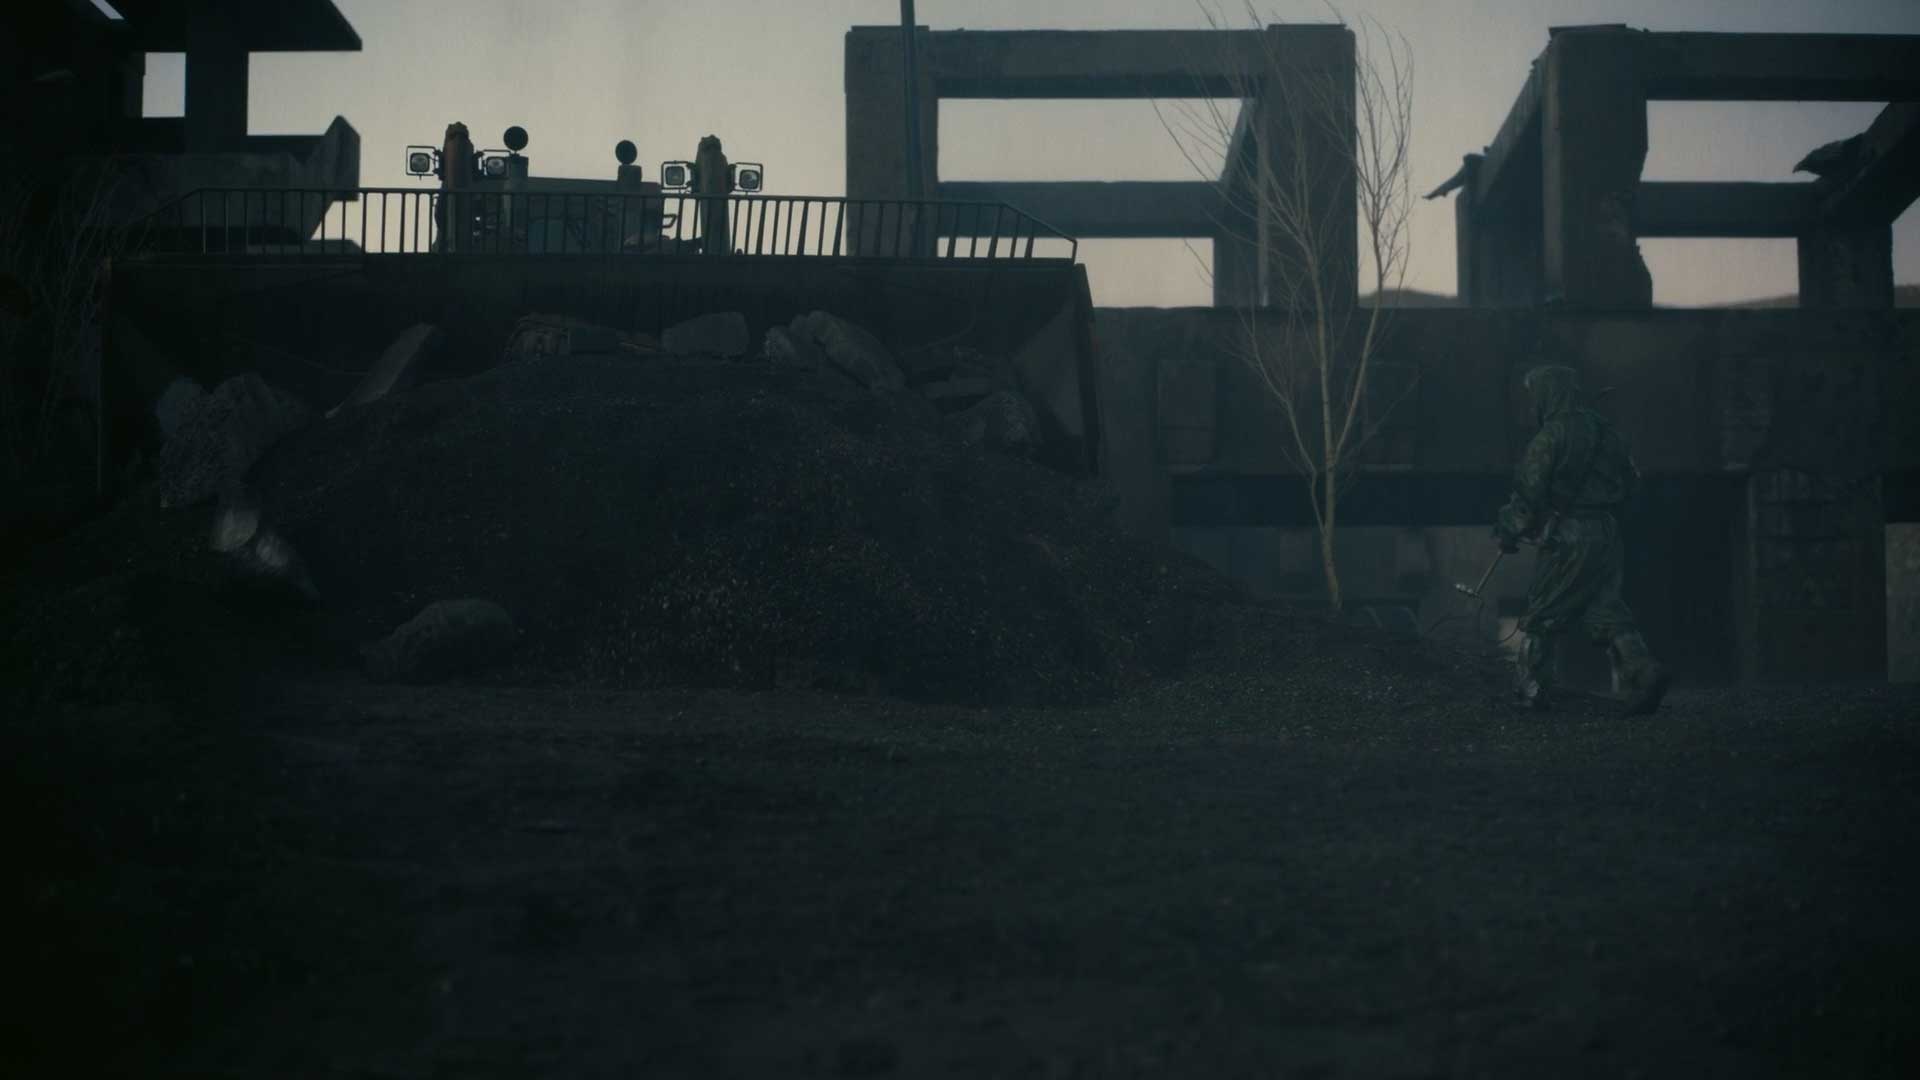 شهر مخفی و اتمی روسیه در فیلم Tenet به اسم استالسک ۱۲ و خرابه های آن